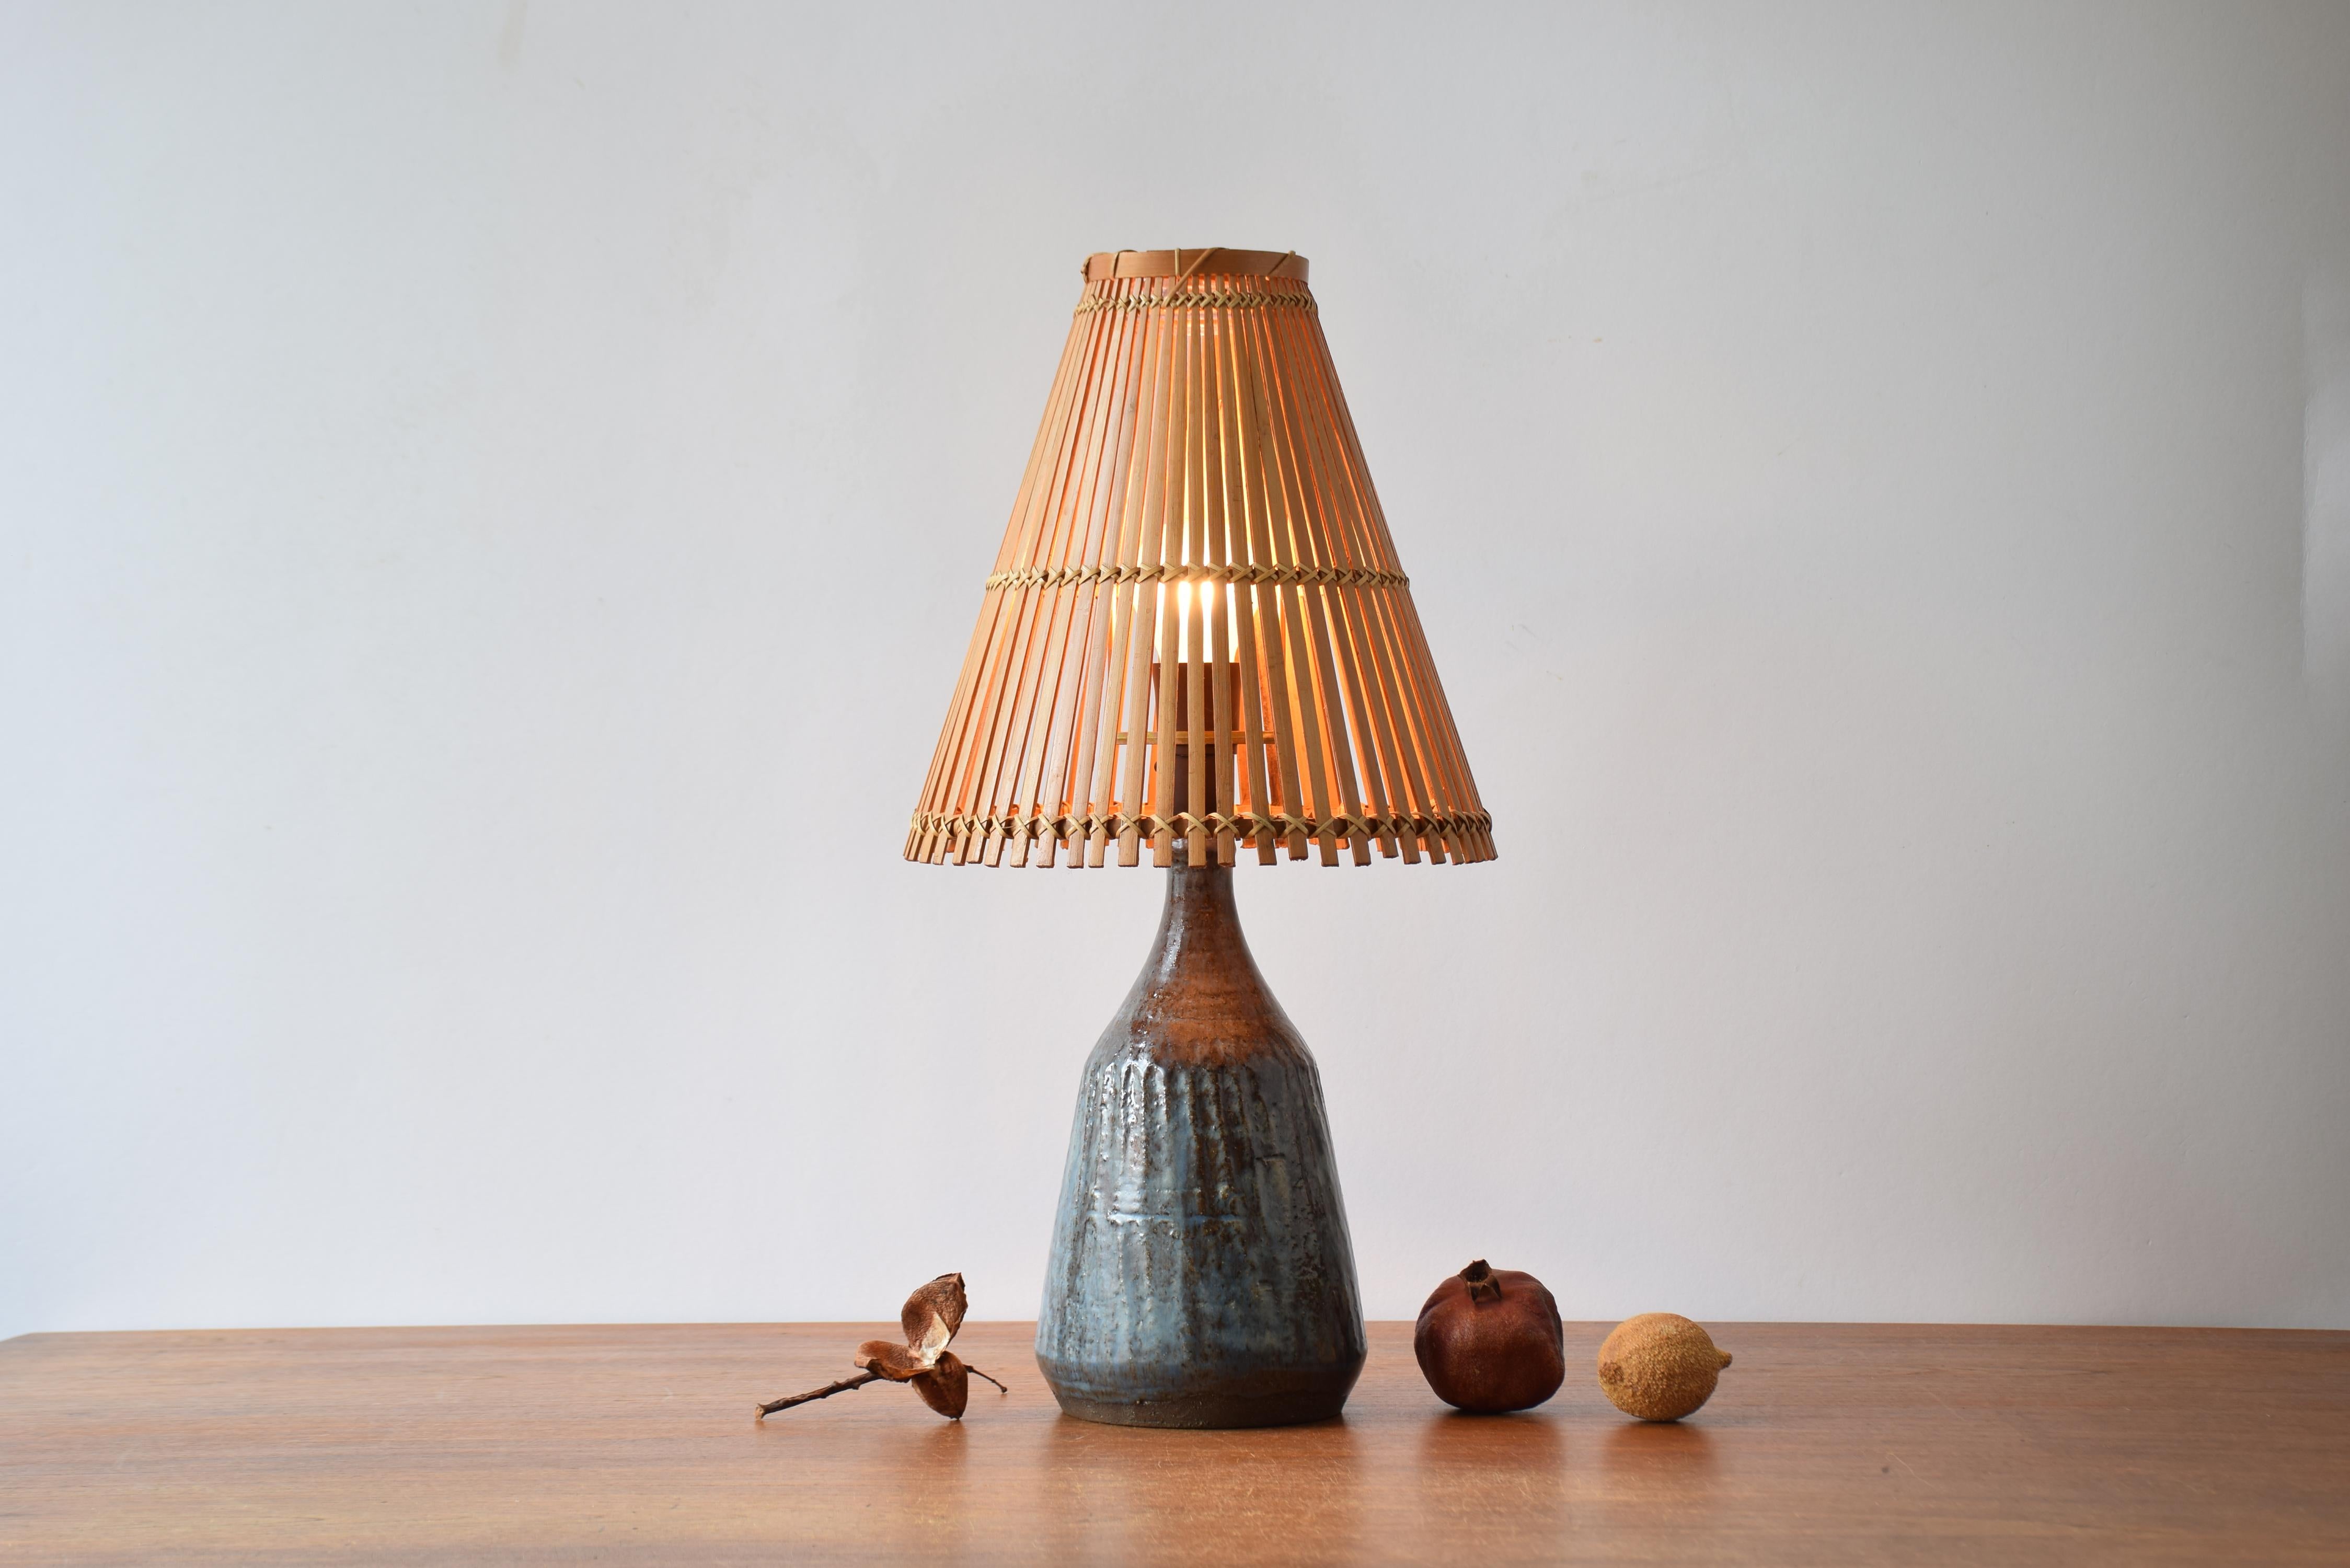 Lampe de table en céramique du milieu du siècle, provenant d'un studio danois. Fabriqué ca. Années 1950 à 1960. La lampe comprend un abat-jour en bambou vintage.

La lampe a une glaçure bleue et brune.

La lampe n'est pas signée et le designer est